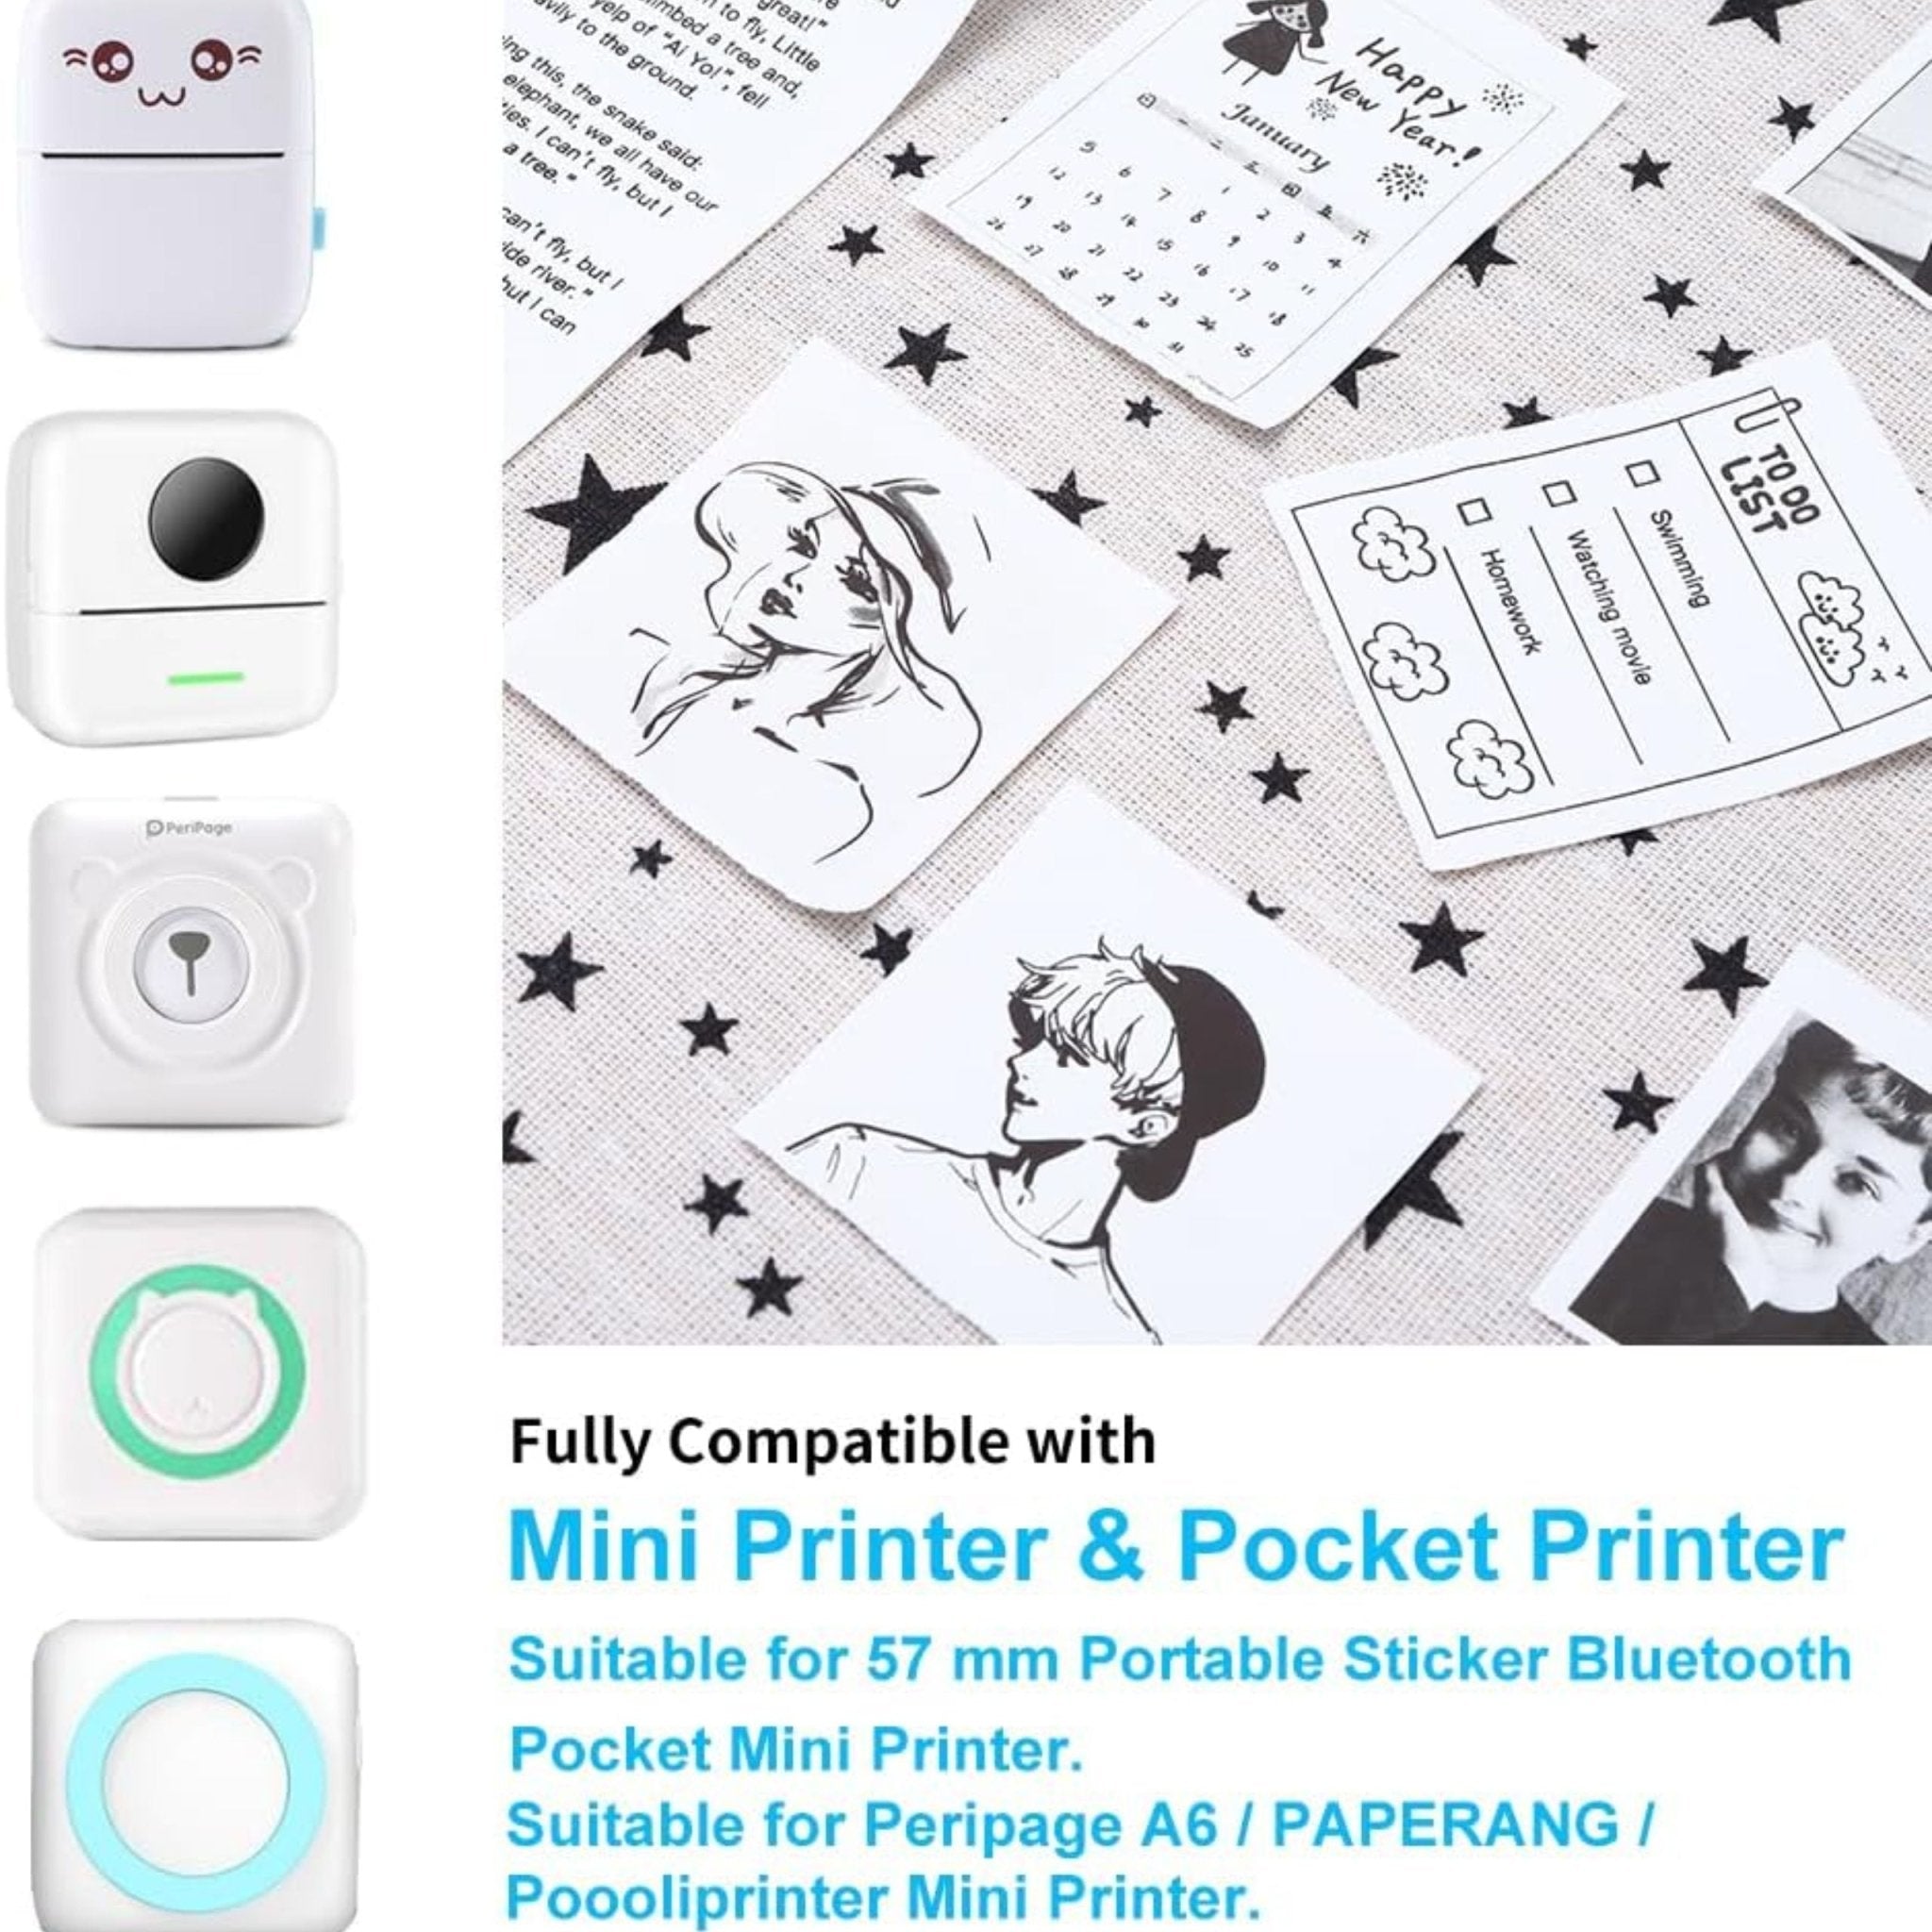 5 Pcs Thermal Paper, Mini Printer Paper, Self Adhesive Printable Sticker  Paper For Pocket Thermal Printer